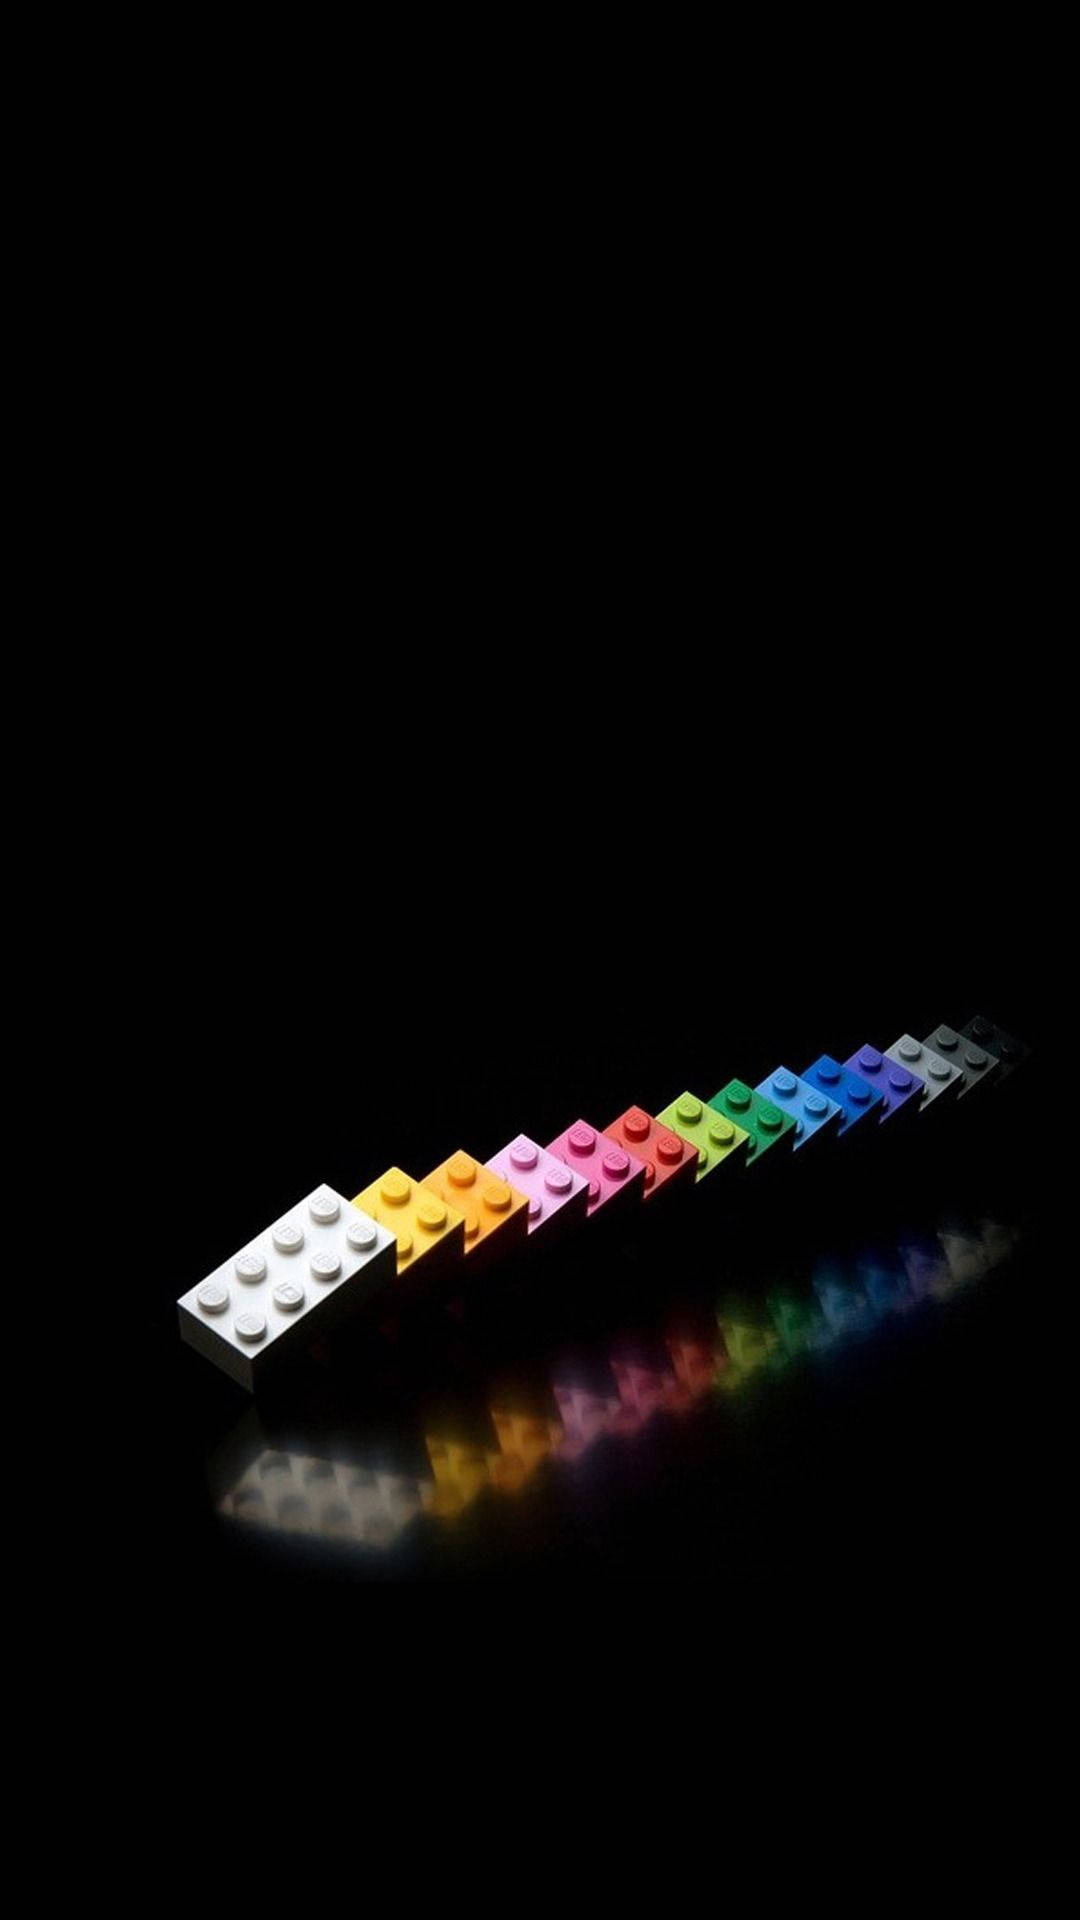 Colorful Lego Bricks Background